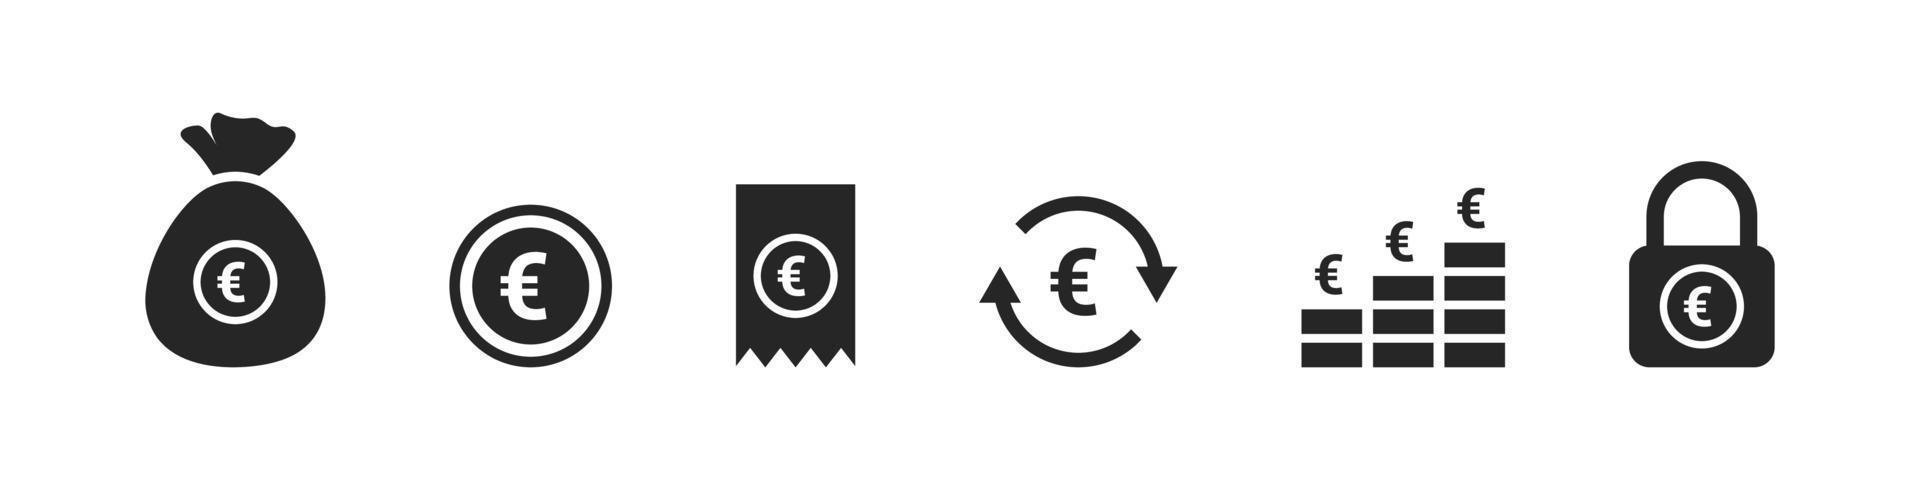 moneta icone. Euro icone. i soldi segni. finanziario vettore icone. vettore illustrazione